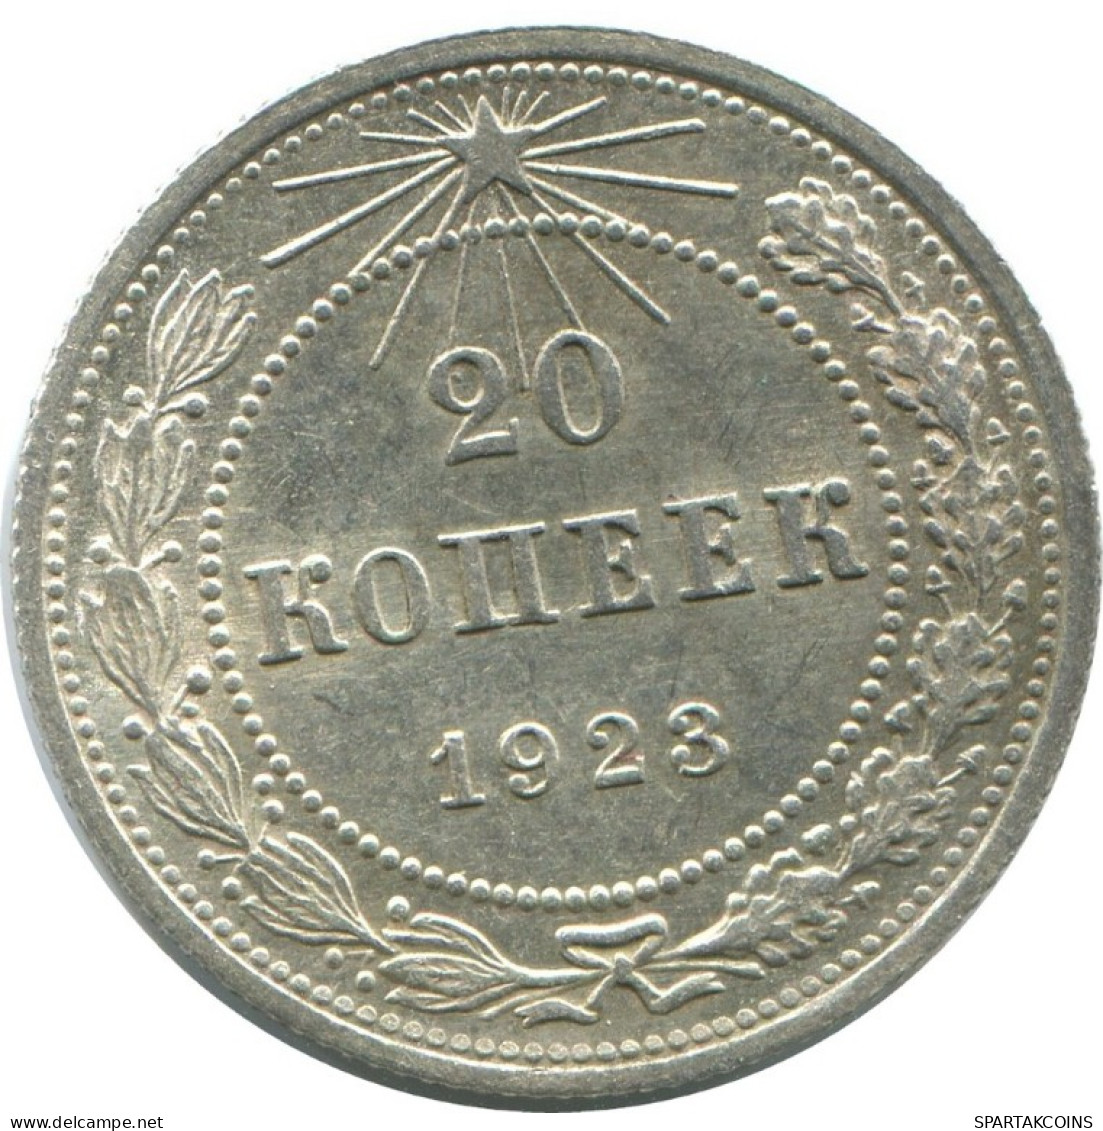 20 KOPEKS 1923 RUSIA RUSSIA RSFSR PLATA Moneda HIGH GRADE #AF688.E.A - Russland